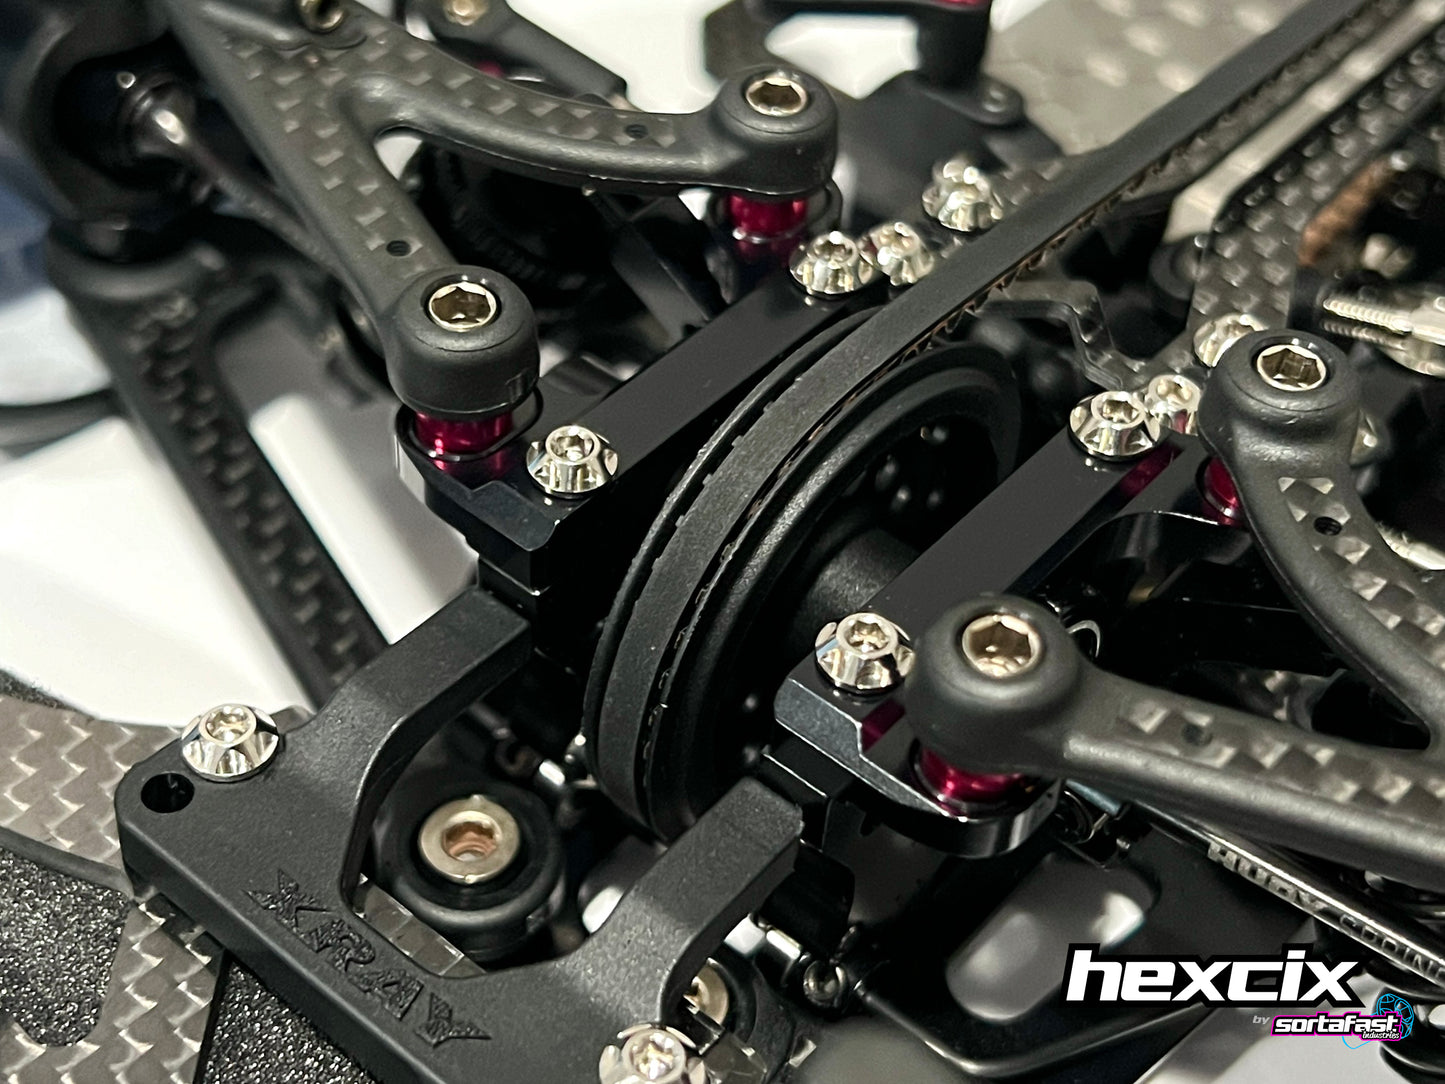 Sortafast Titanium Screws - Hexcix Button Head - 4pk (Metric)